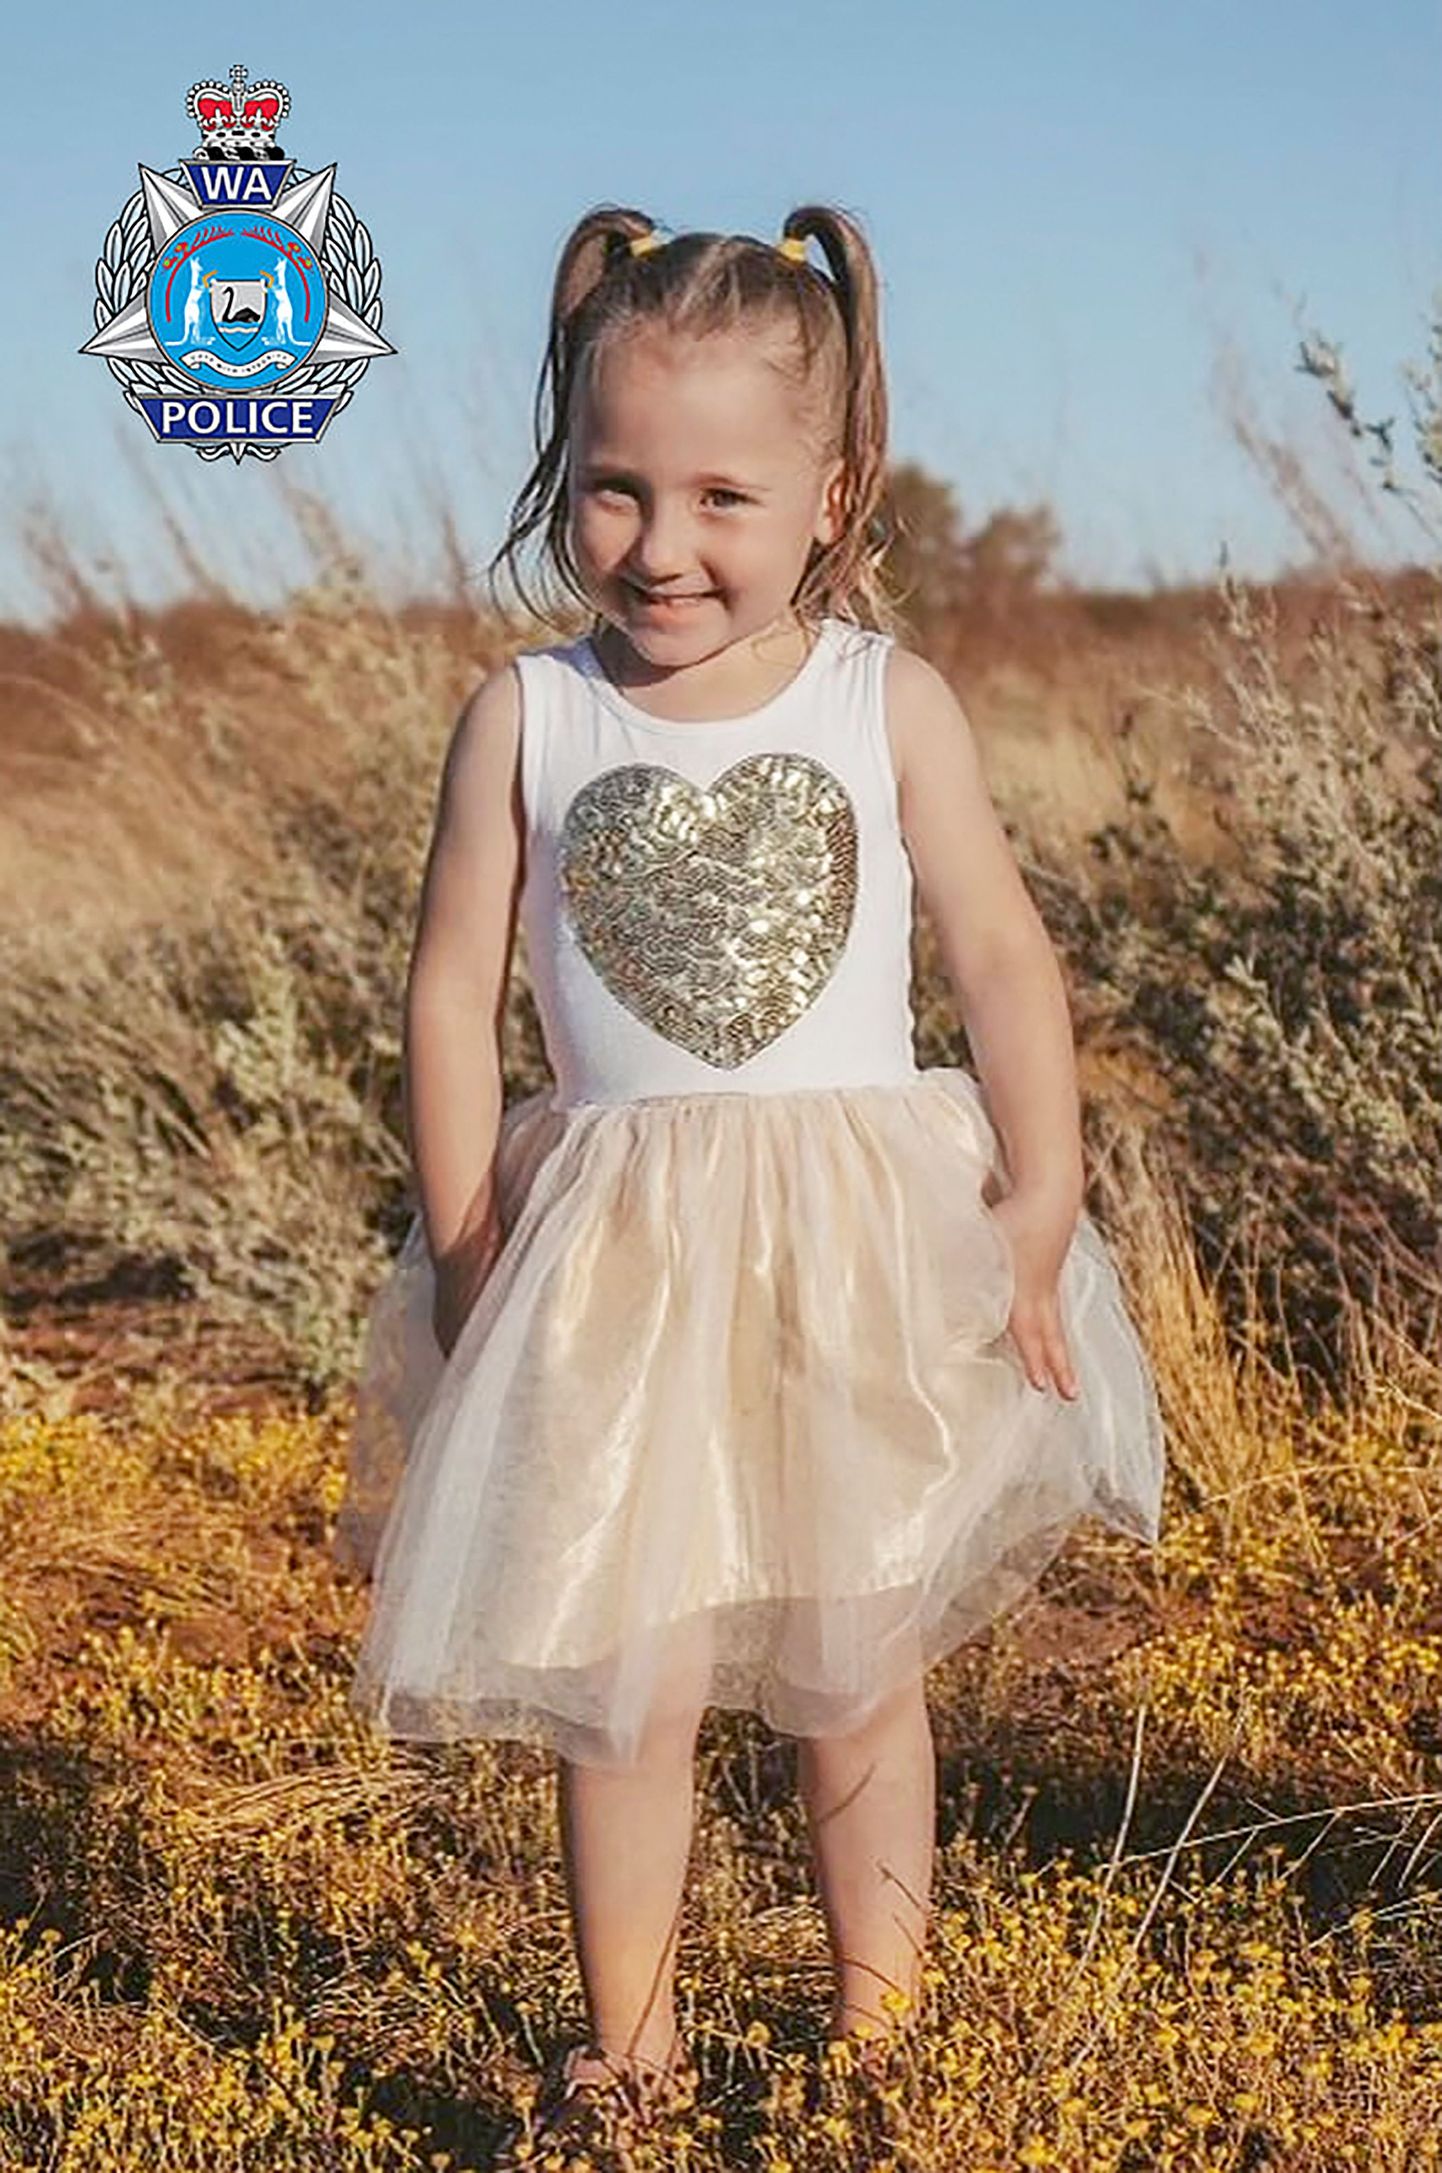 Nelja-aastase Cleo kadumist võrreldakse Maddie McCanni tragöödiaga